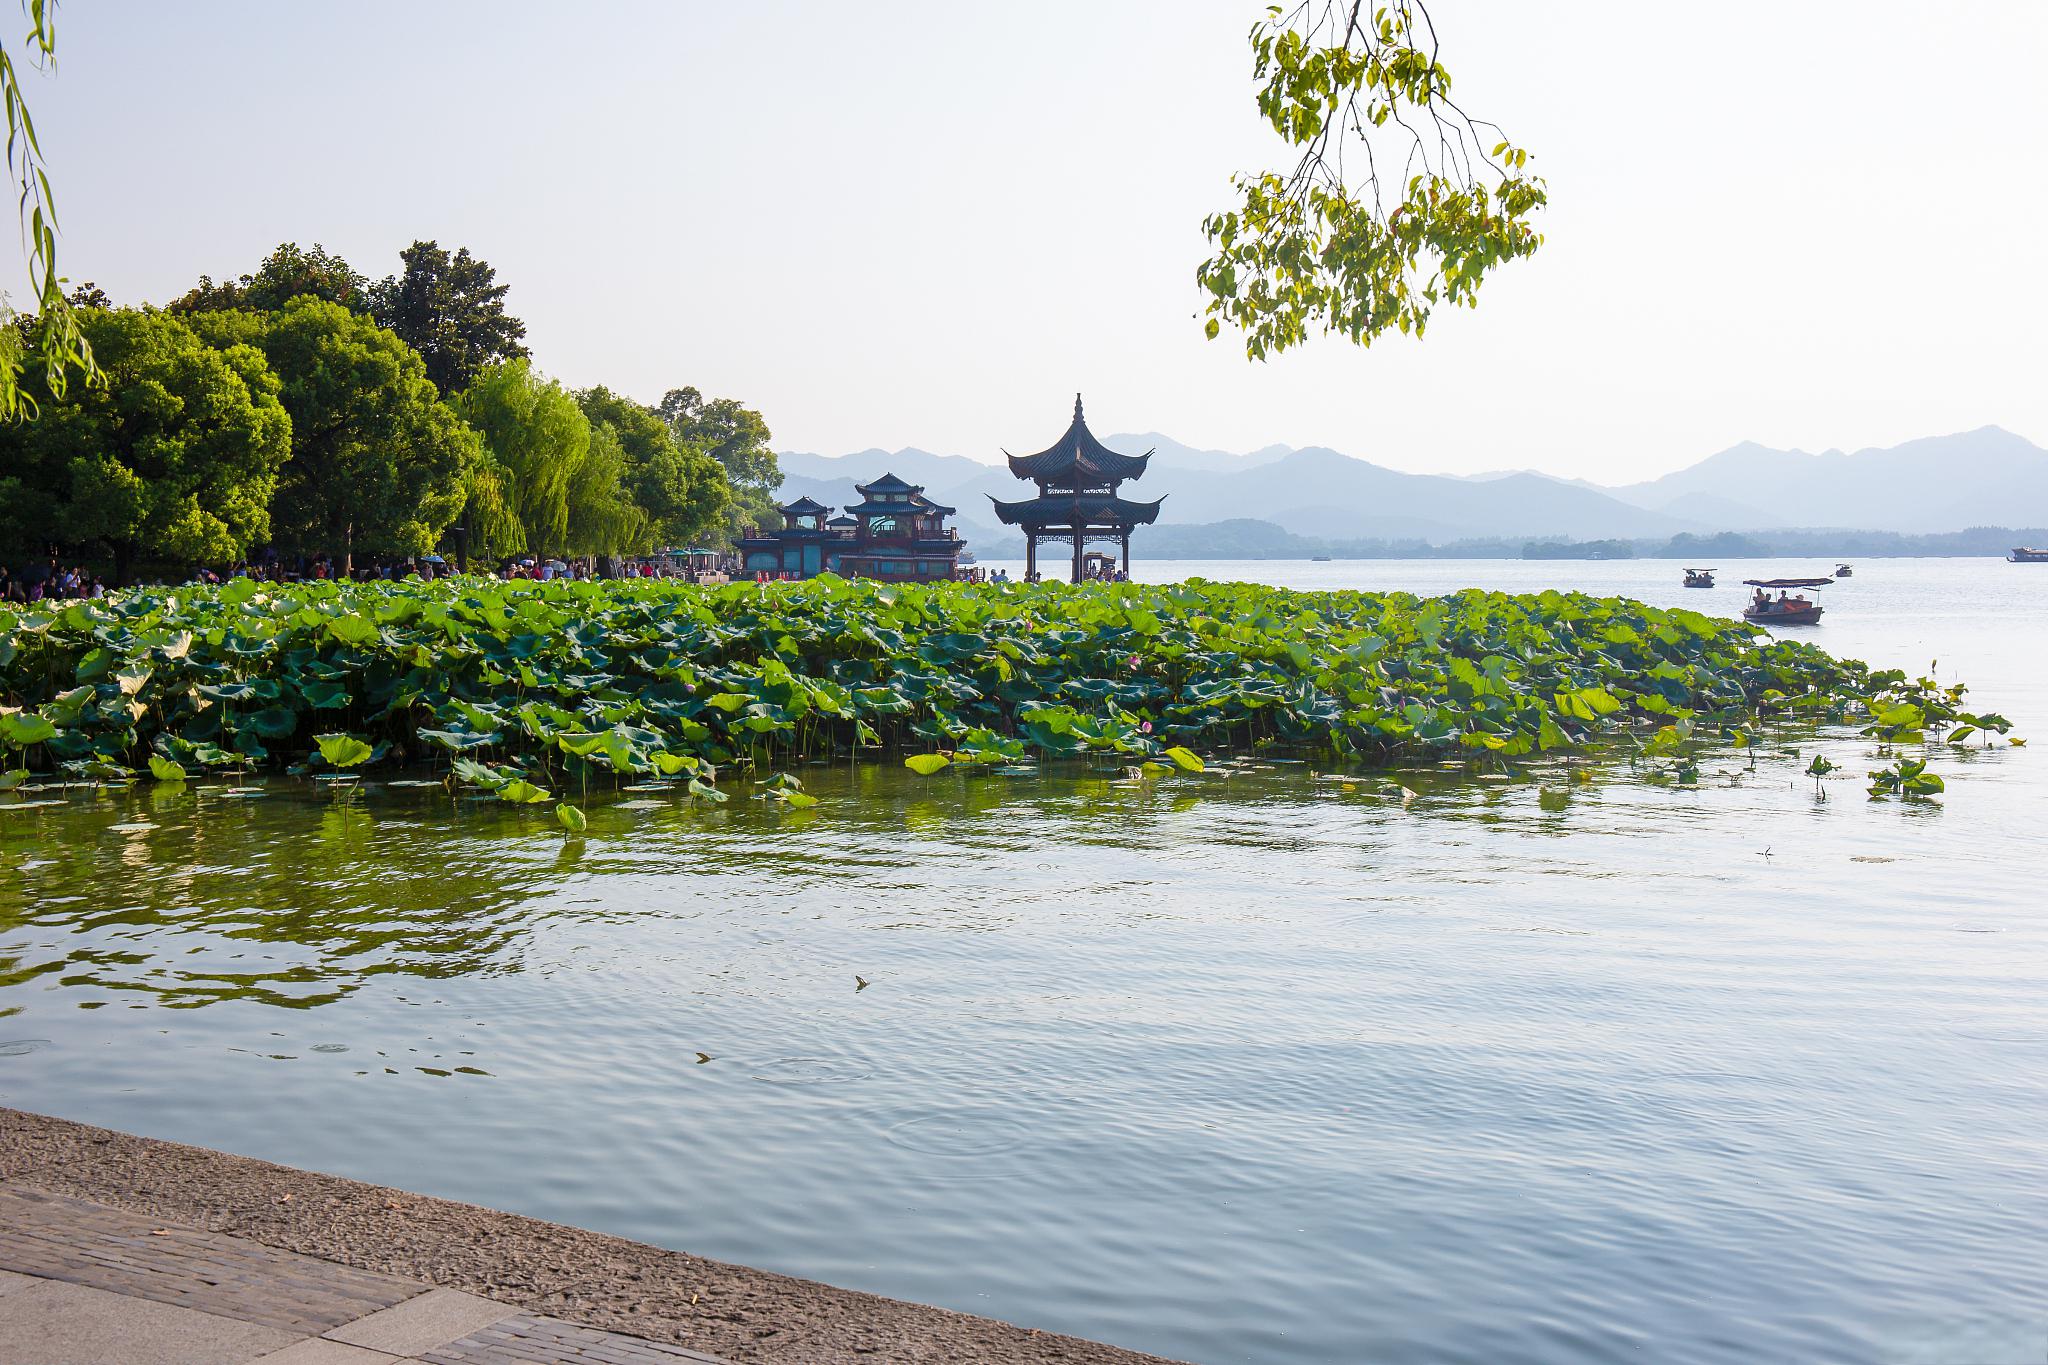 西湖风景区位于中国浙江省杭州市,是国内旅游必去的十大地方之一